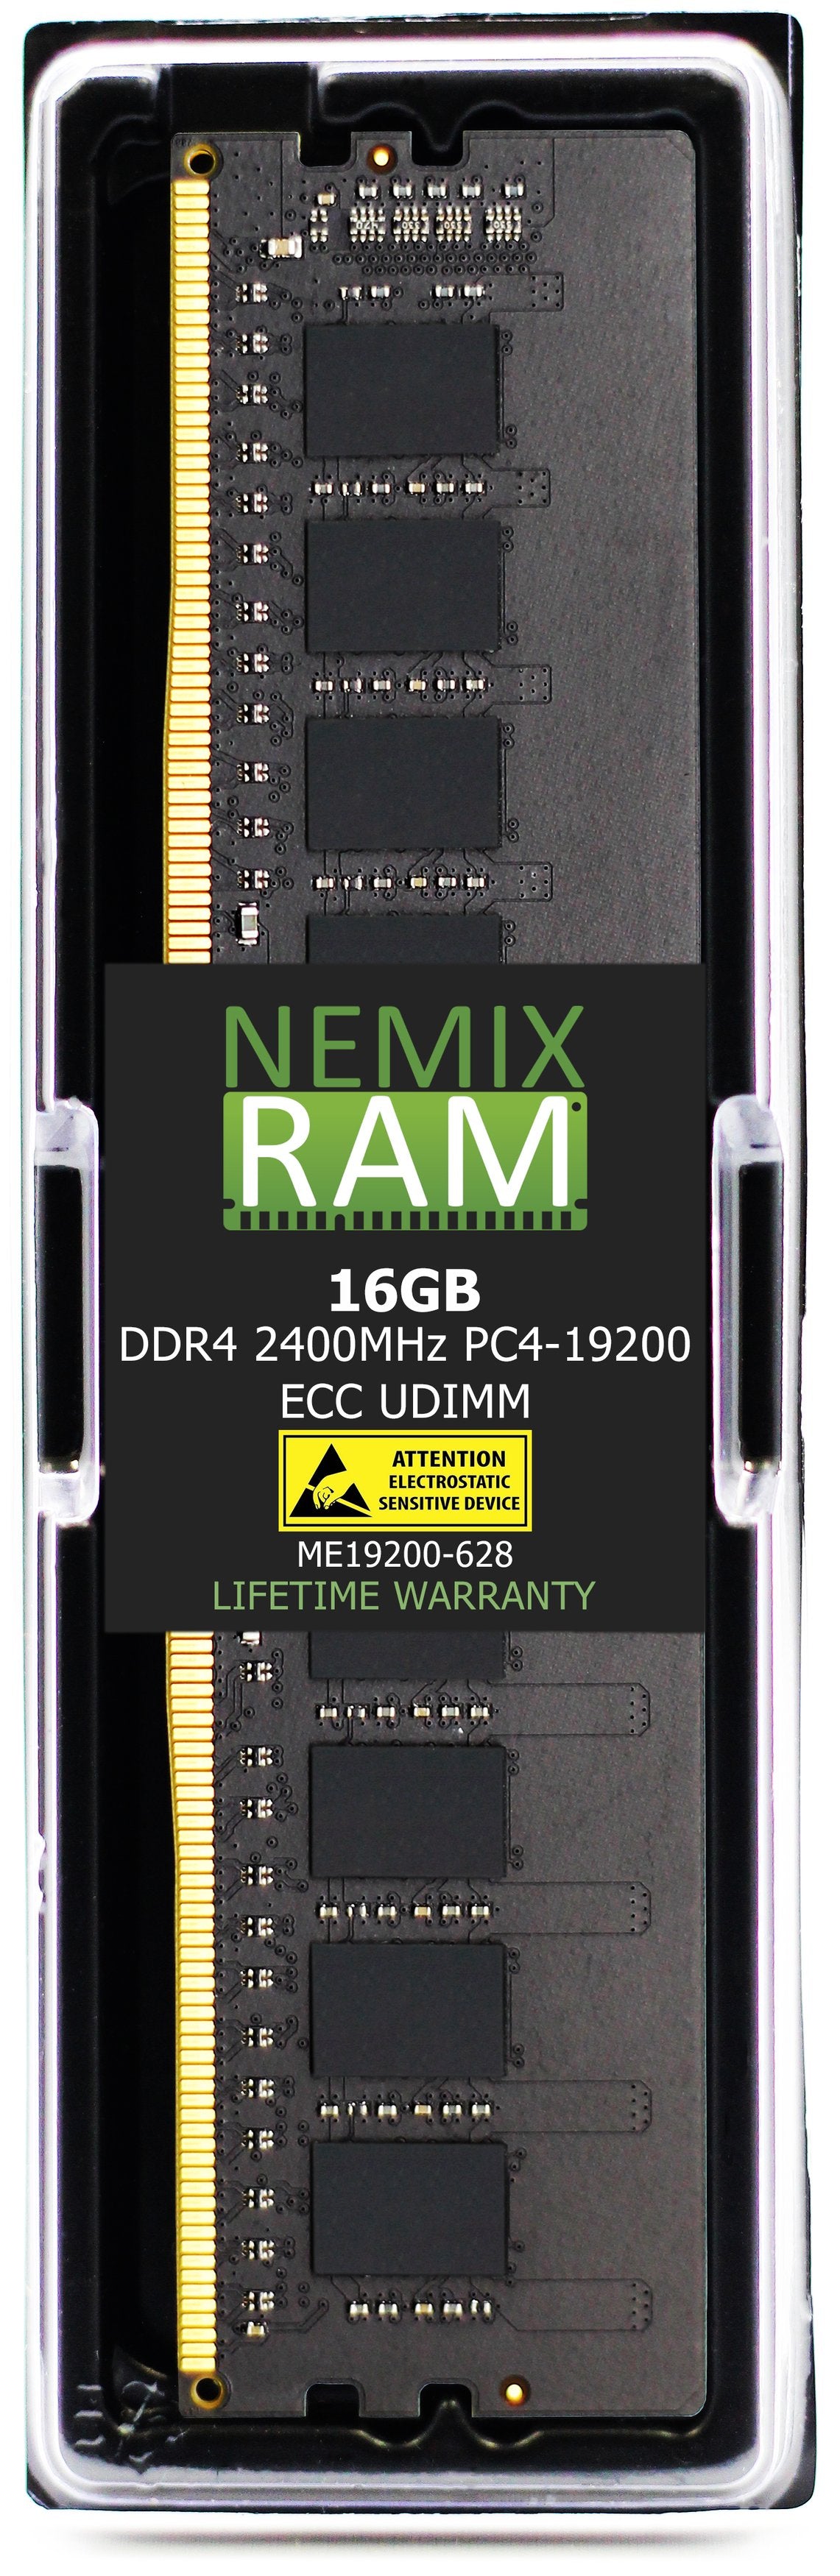 16GB DDR4 2400MHZ PC4-19200 ECC UDIMM Compatible with Supermicro MEM-DR416L-CL02-EU24